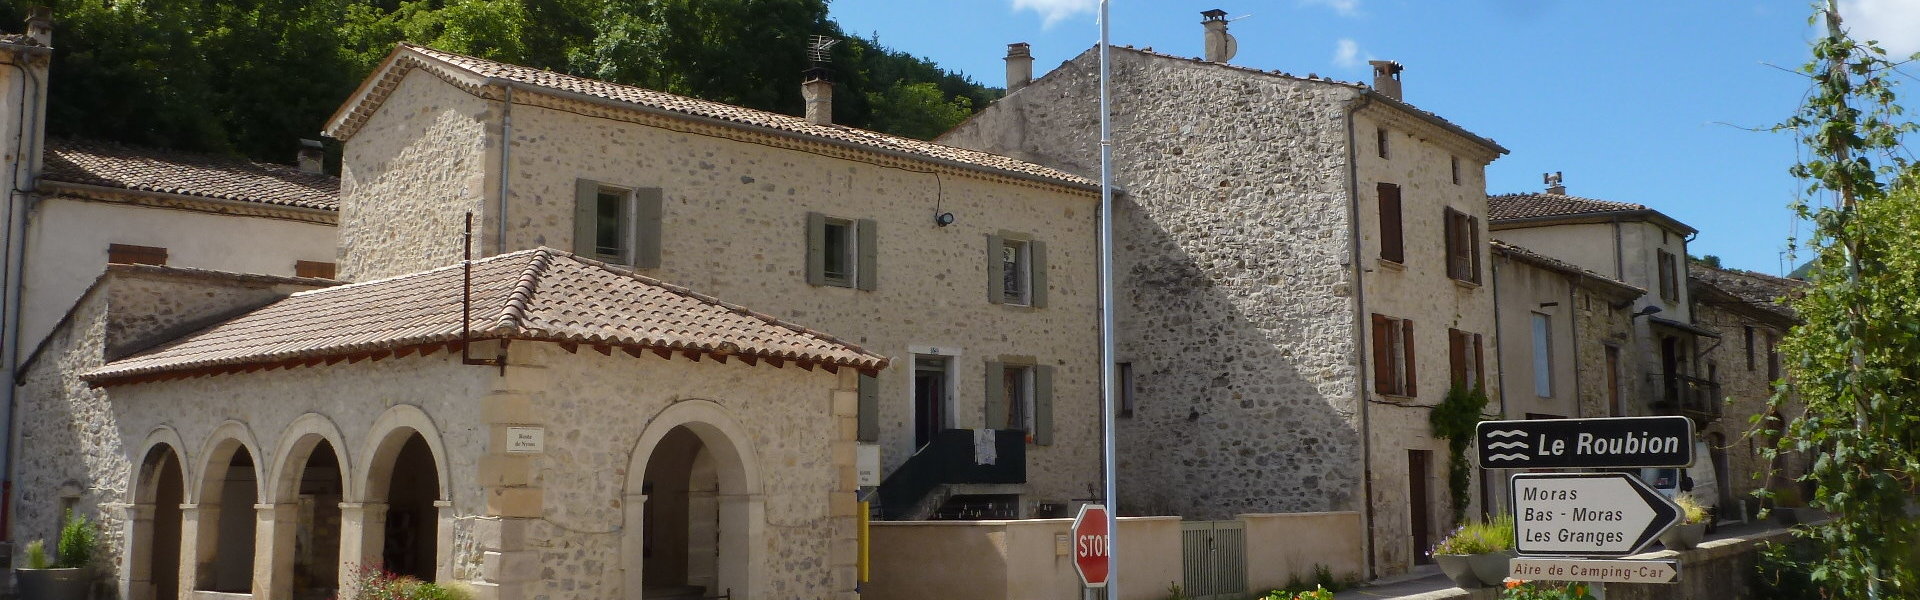 Urbanisme - Commune de Bouvières - Département de la Drôme